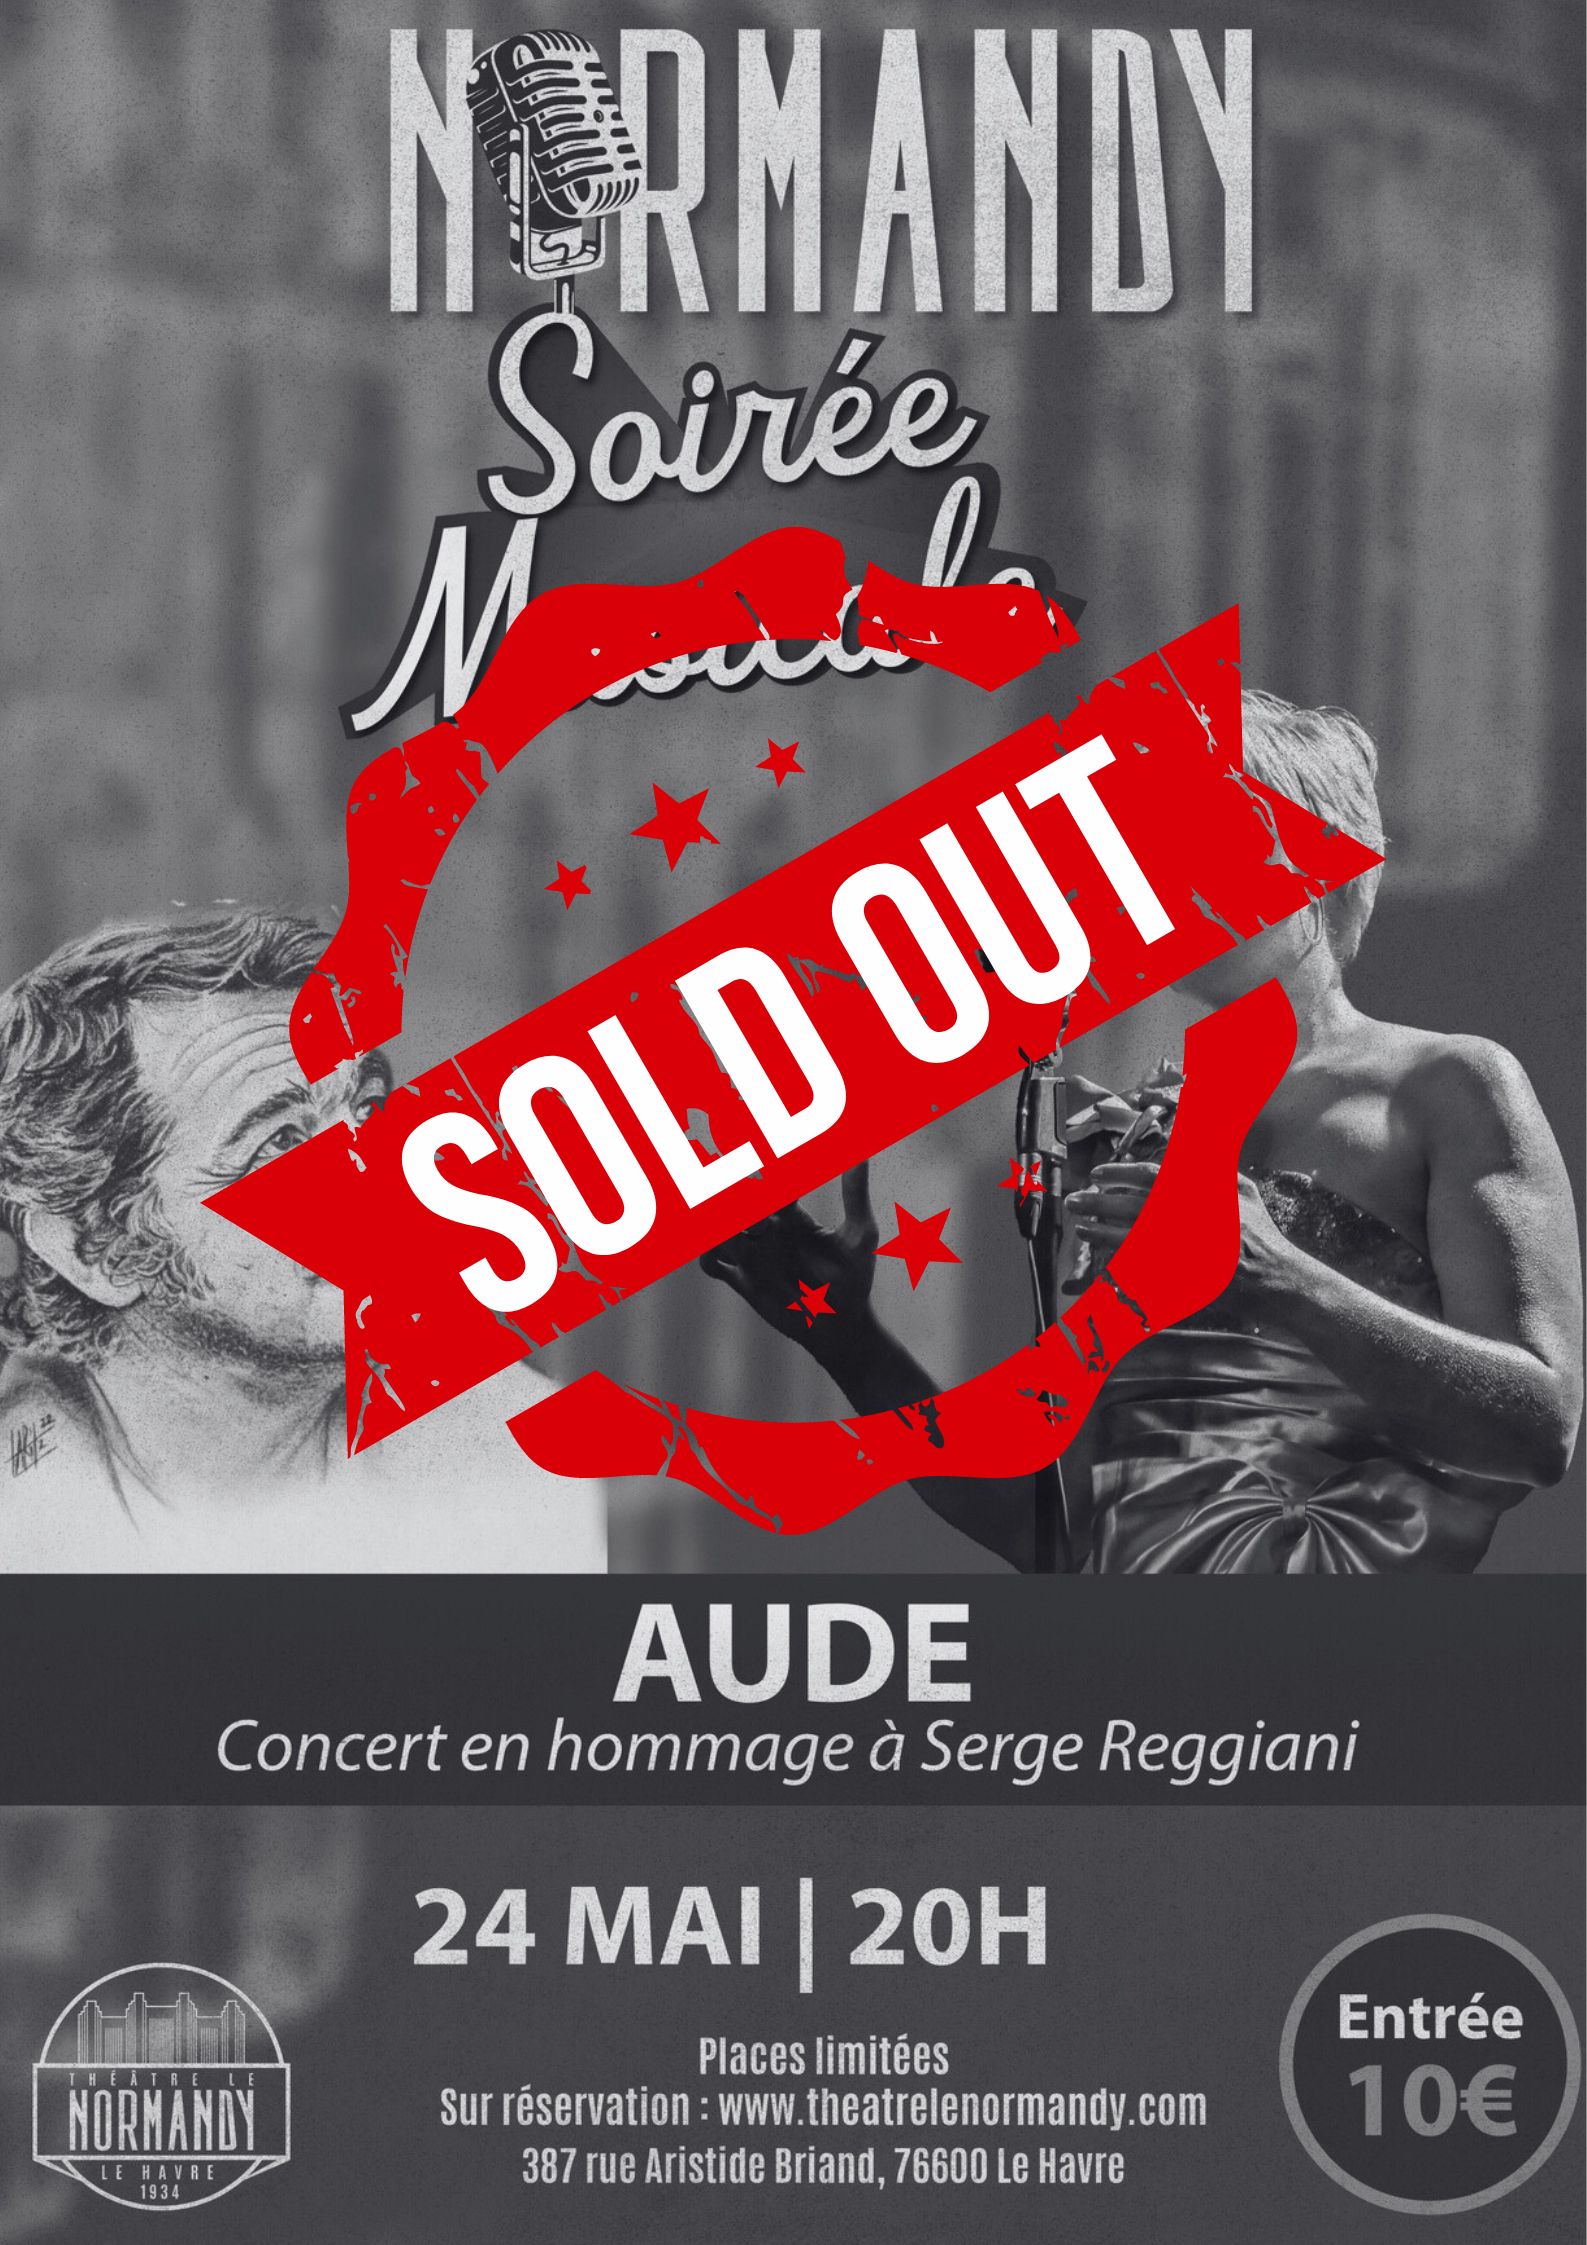 Soirée Musicale au Normandy : Aude hommage à Serge Reggiani